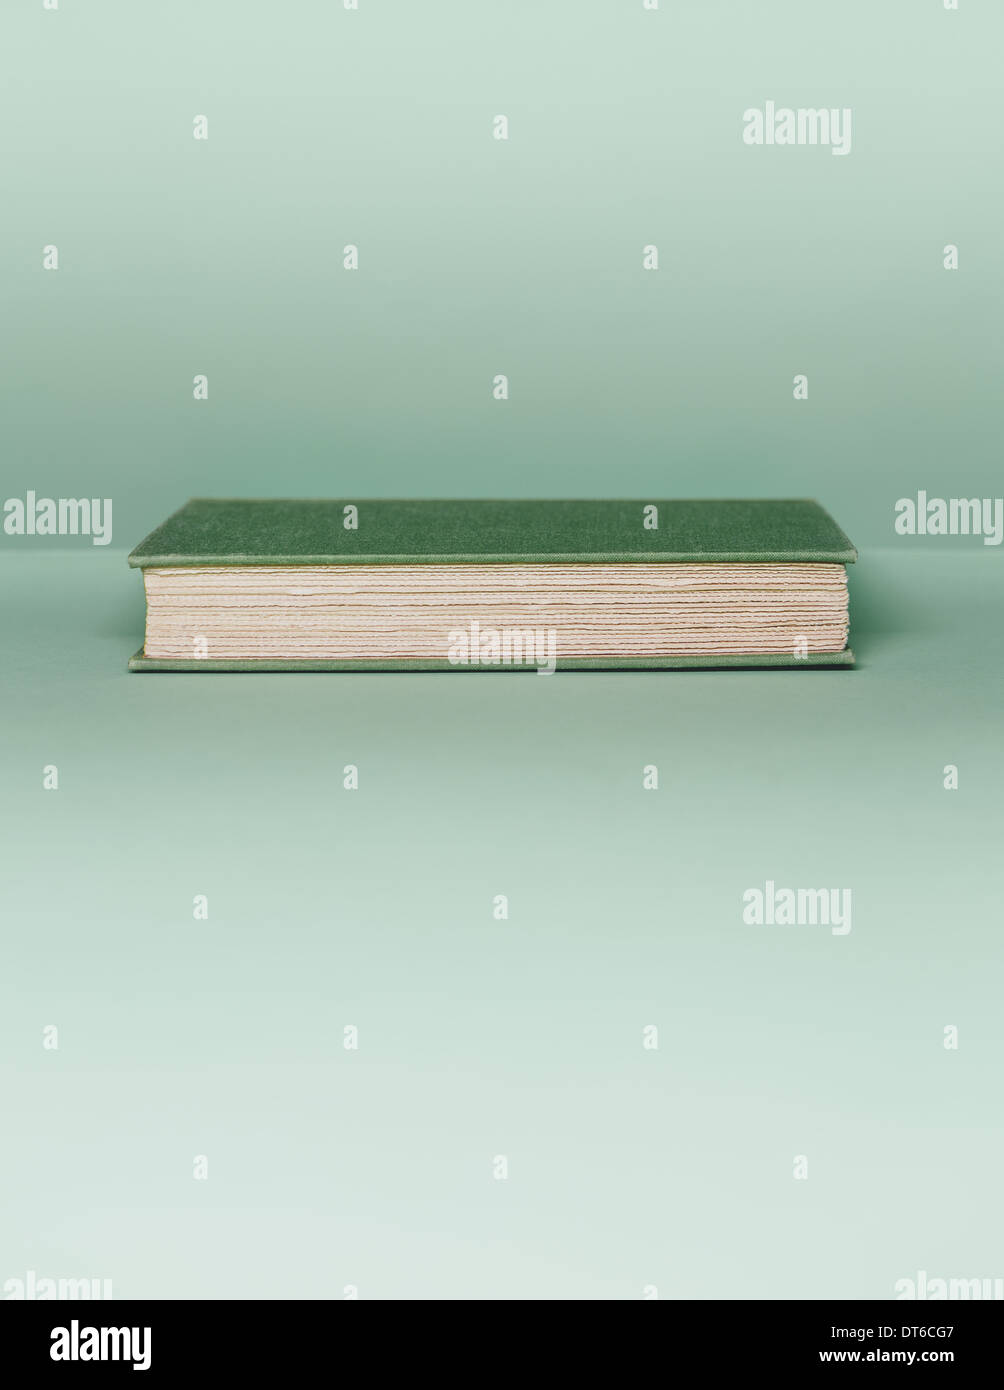 Un livre avec une couverture verte, et le livre blanc, les bords de la page située à l'horizontale sur un fond vert pâle. Banque D'Images